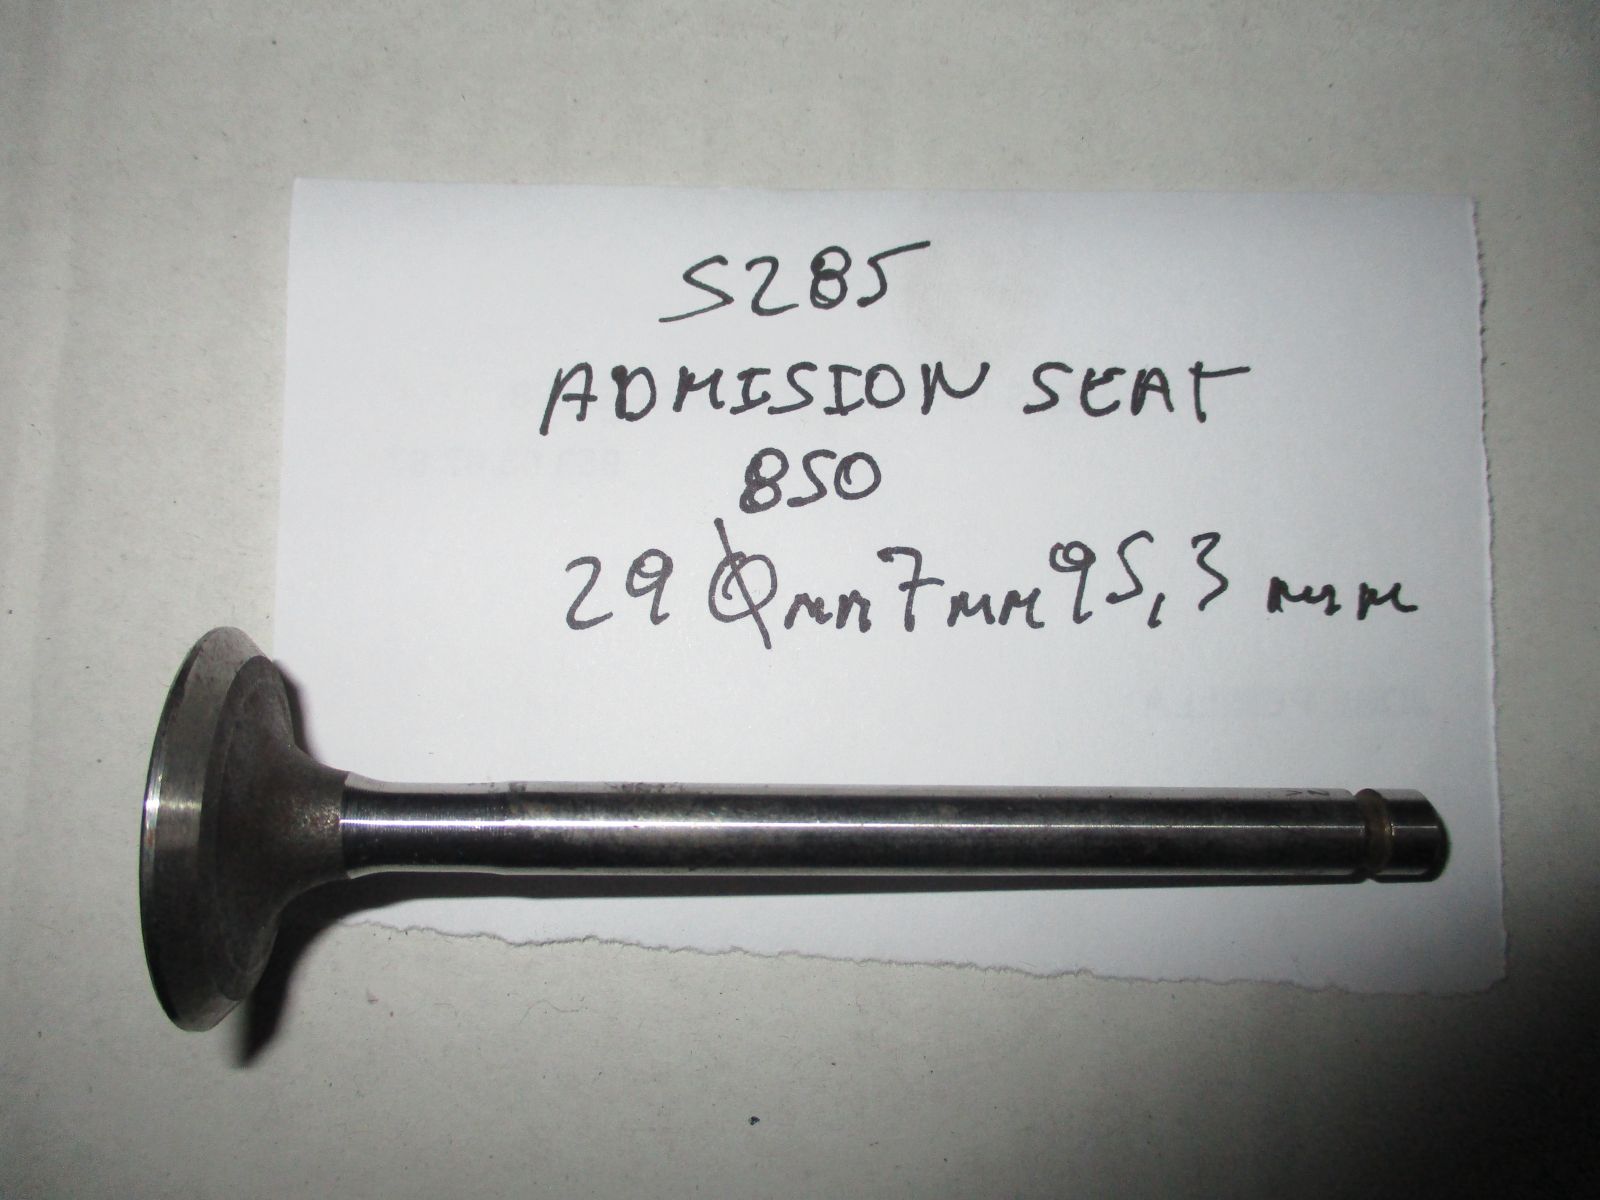 valvula admision seat 850 29mm